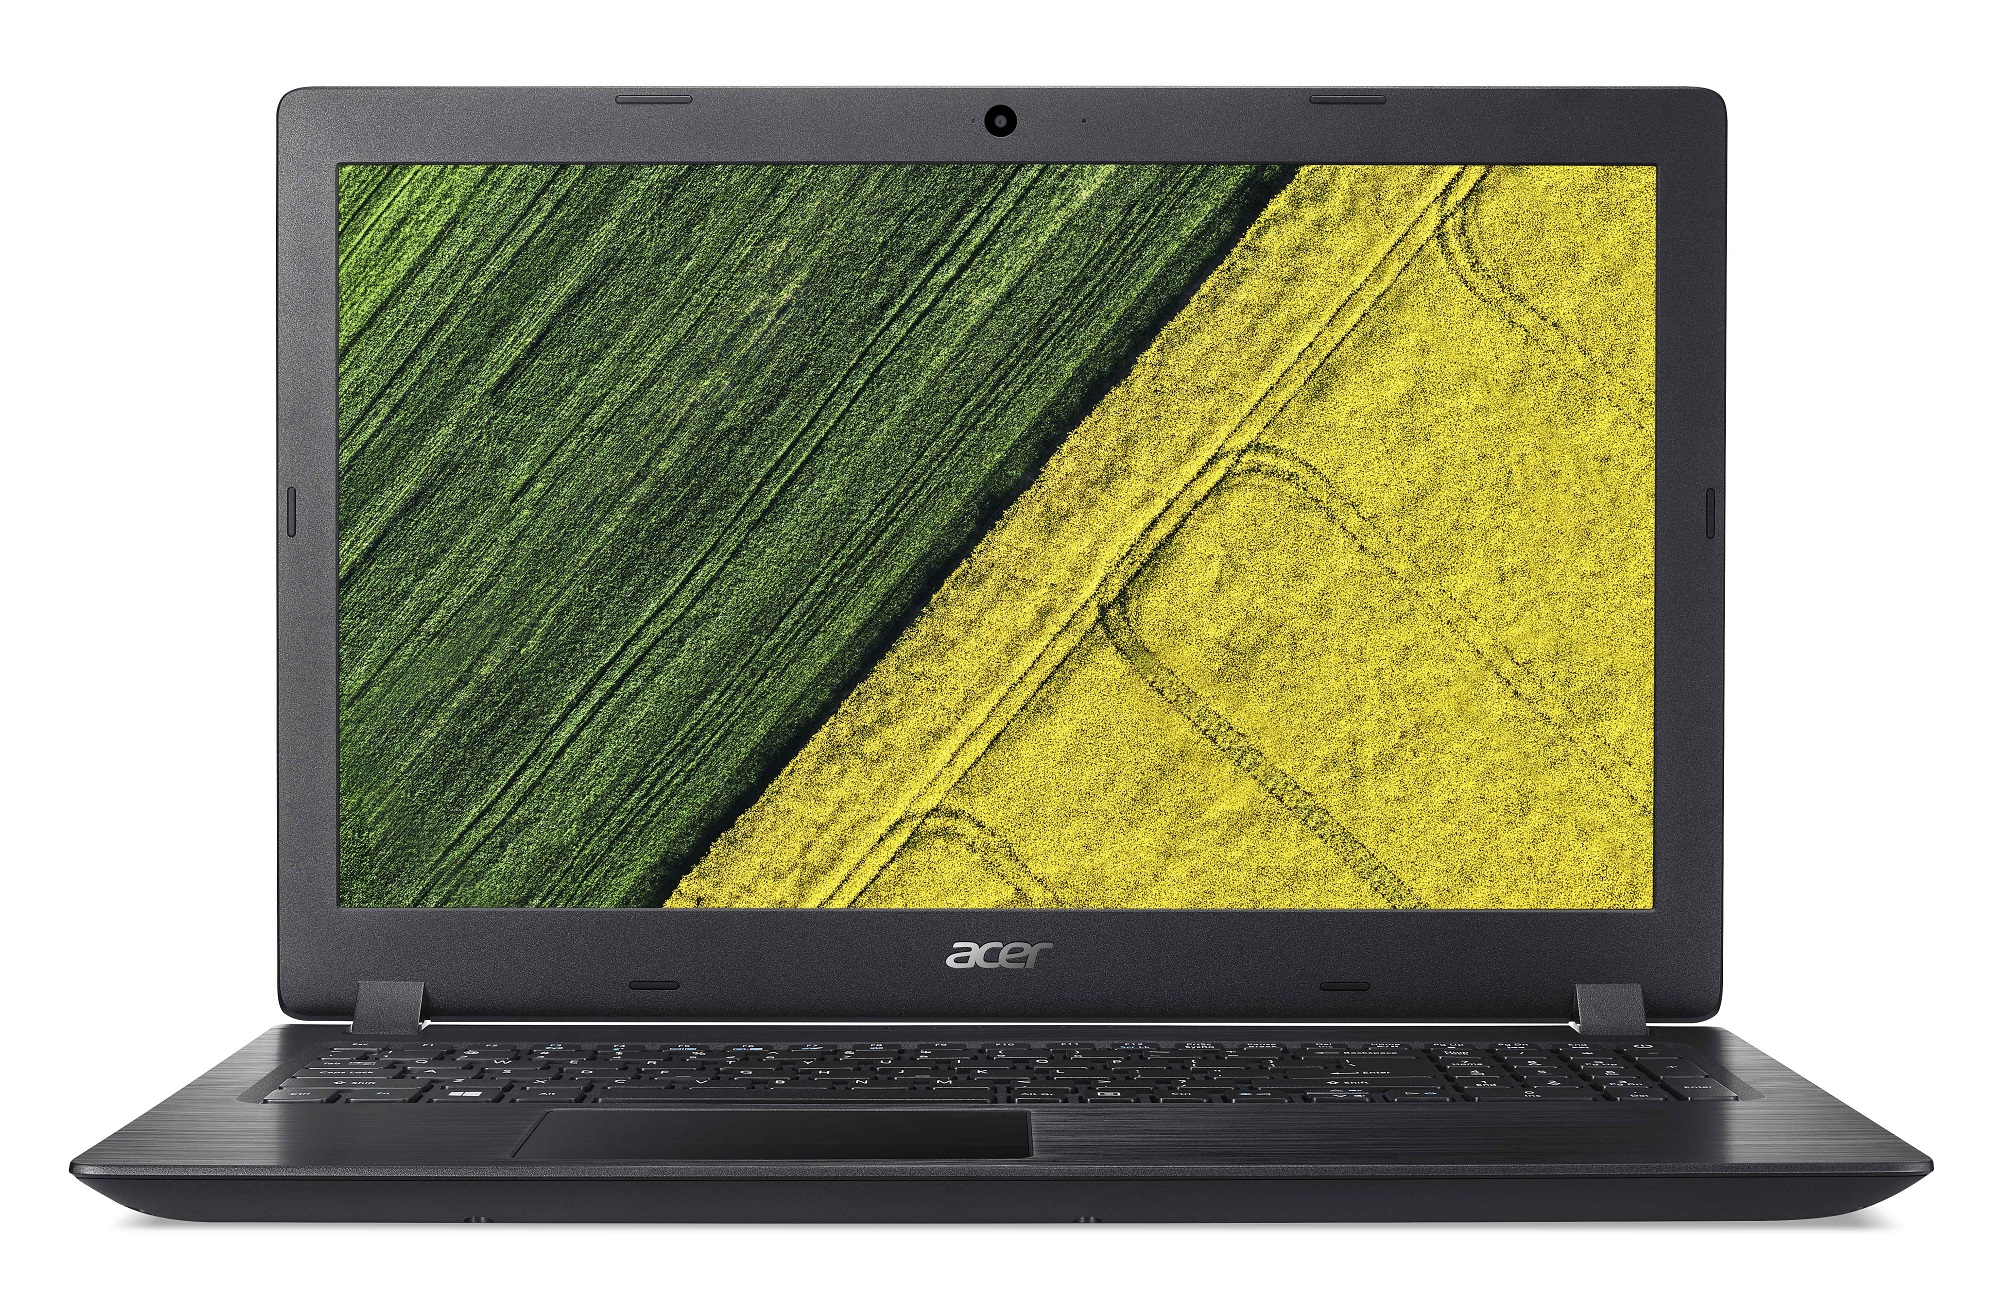 Acer Aspire 3 (A315-51-50S4) i5-7200U/4GB+4GB/256GB SSD M.2+N/HD Graphics/15.6" FHD LED matný/BT/W10 Home/B NX.GNPEC.029